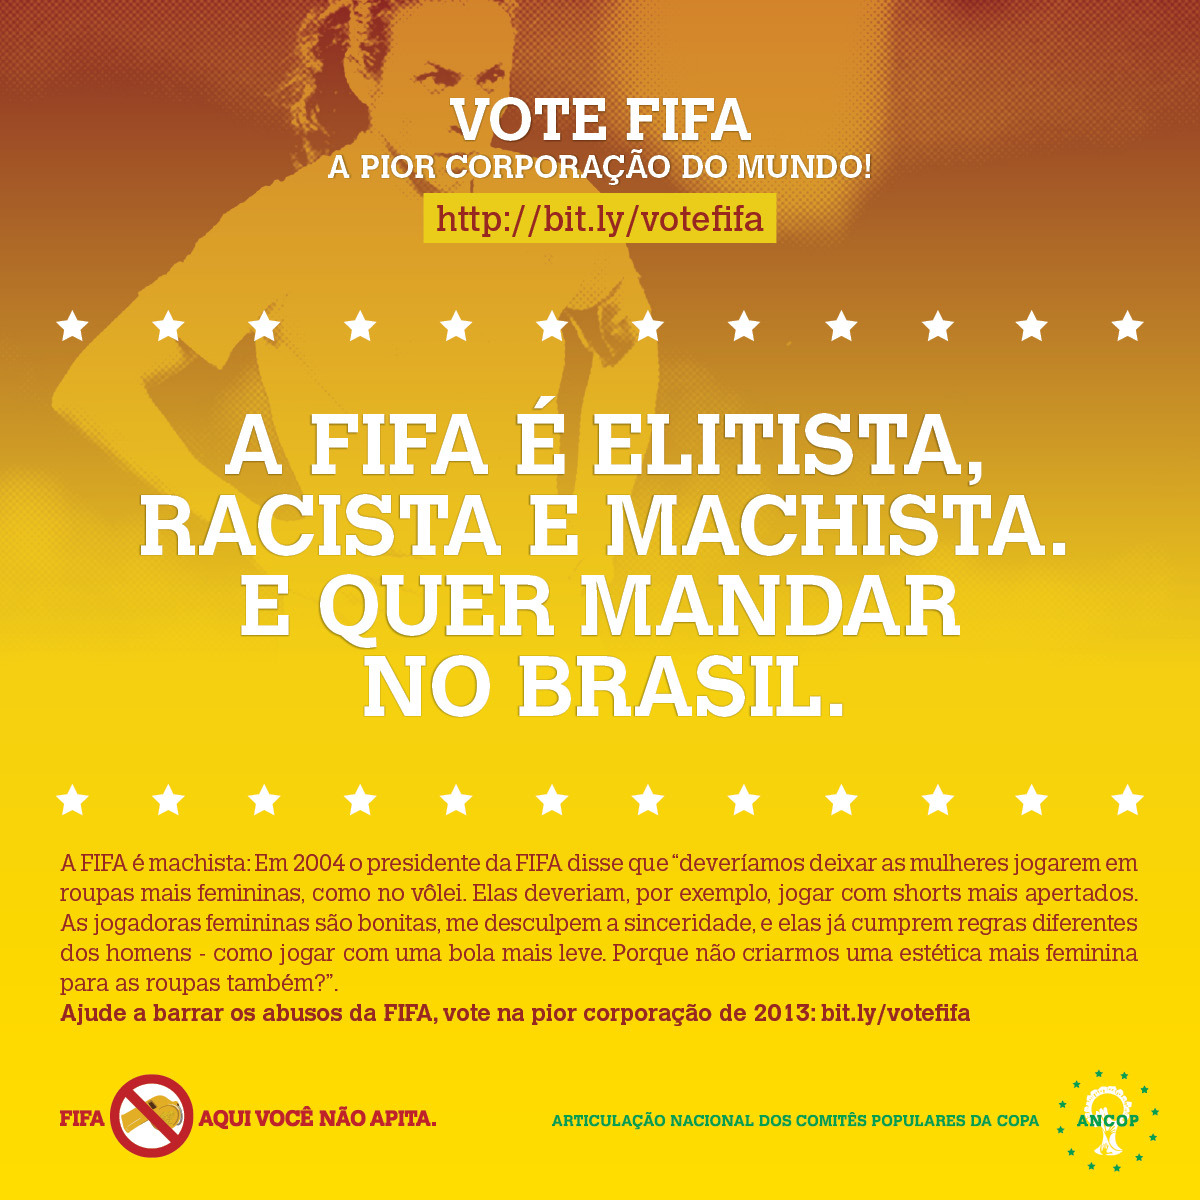 Roupas mais femininas? FIFA, aqui o machismo não apita! VOTE: http://bit.ly/votefifa